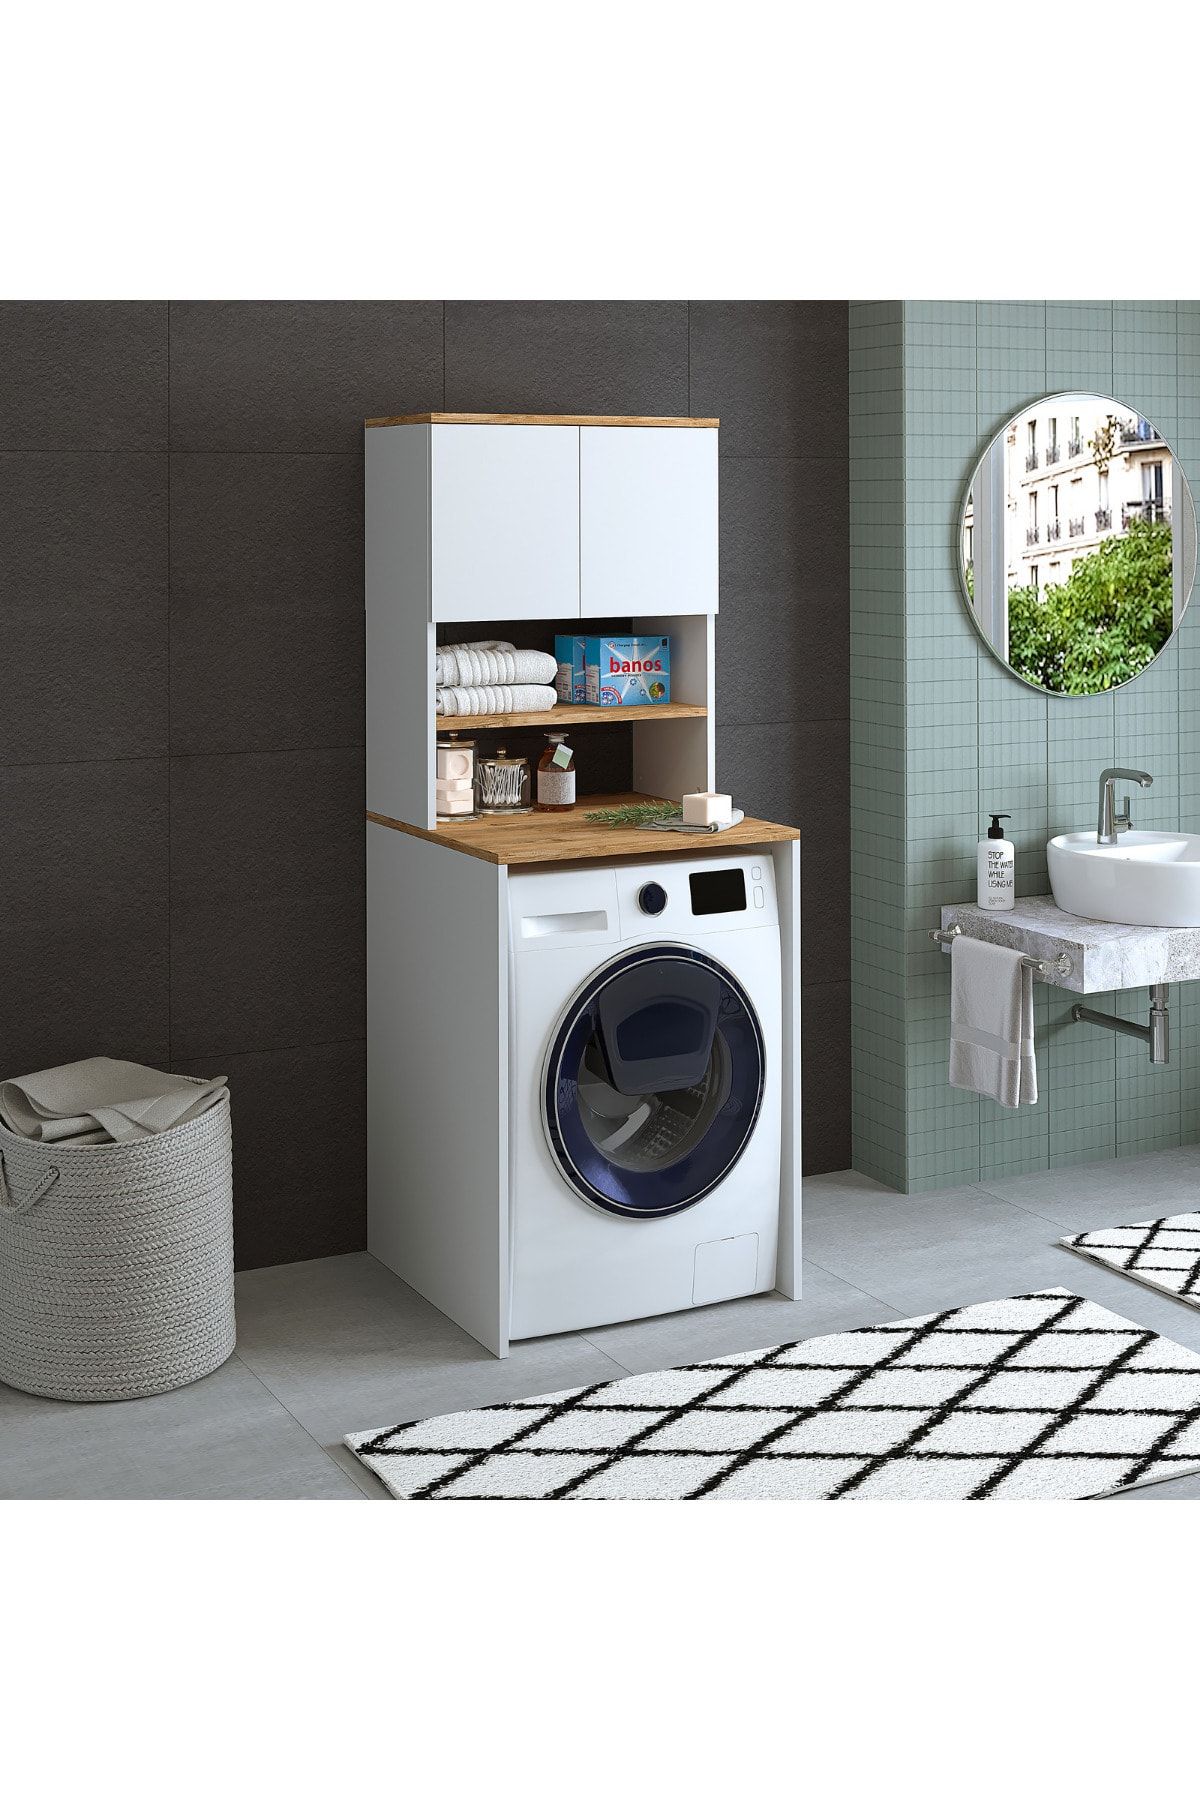 ROOMART Cd9 Çamaşır-kurutma Makinesi Dolabı 3 Raflı 2 Kapaklı Banyo Dolabı Mat Beyaz-ahşap 1712